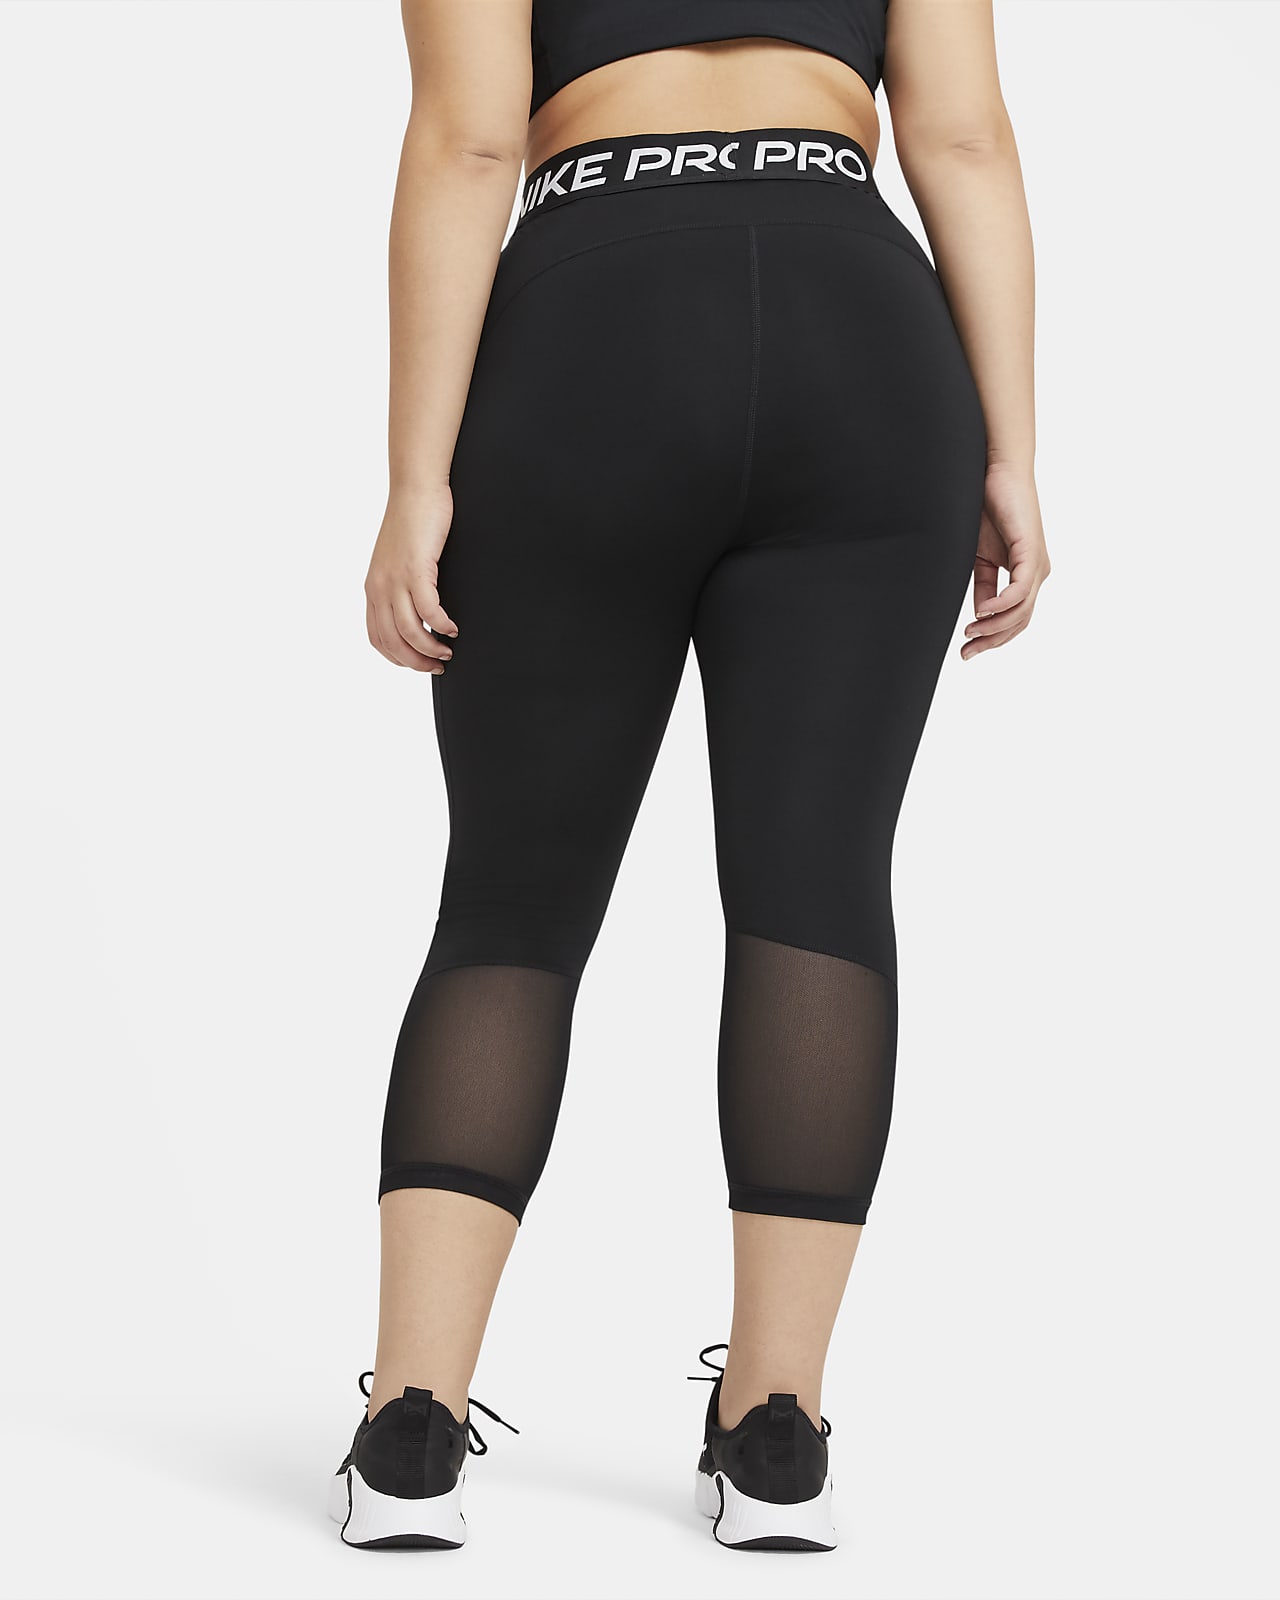 Nike Pro Women's Mid-Rise Crop Leggings Plus Size 2XL DC5393-010 Black for  sale online